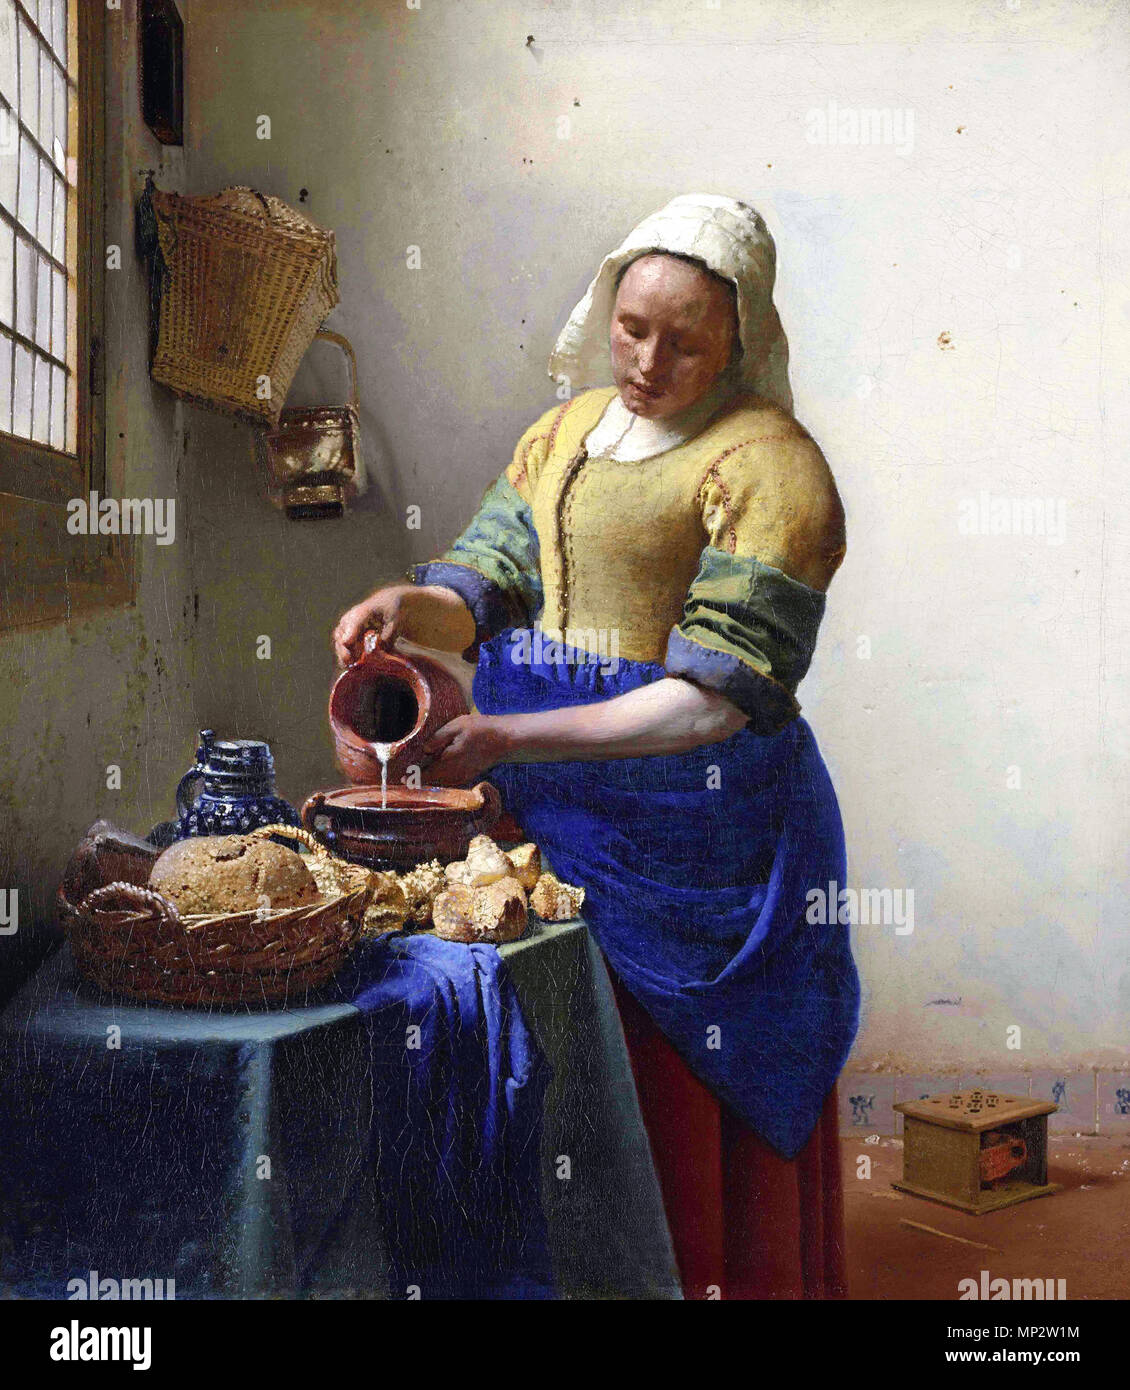 Opname 11 2006 inkl. correctie Nederlands: De melkmeid  1660. 730 Johannes Vermeer-De melkmeid Stockfoto